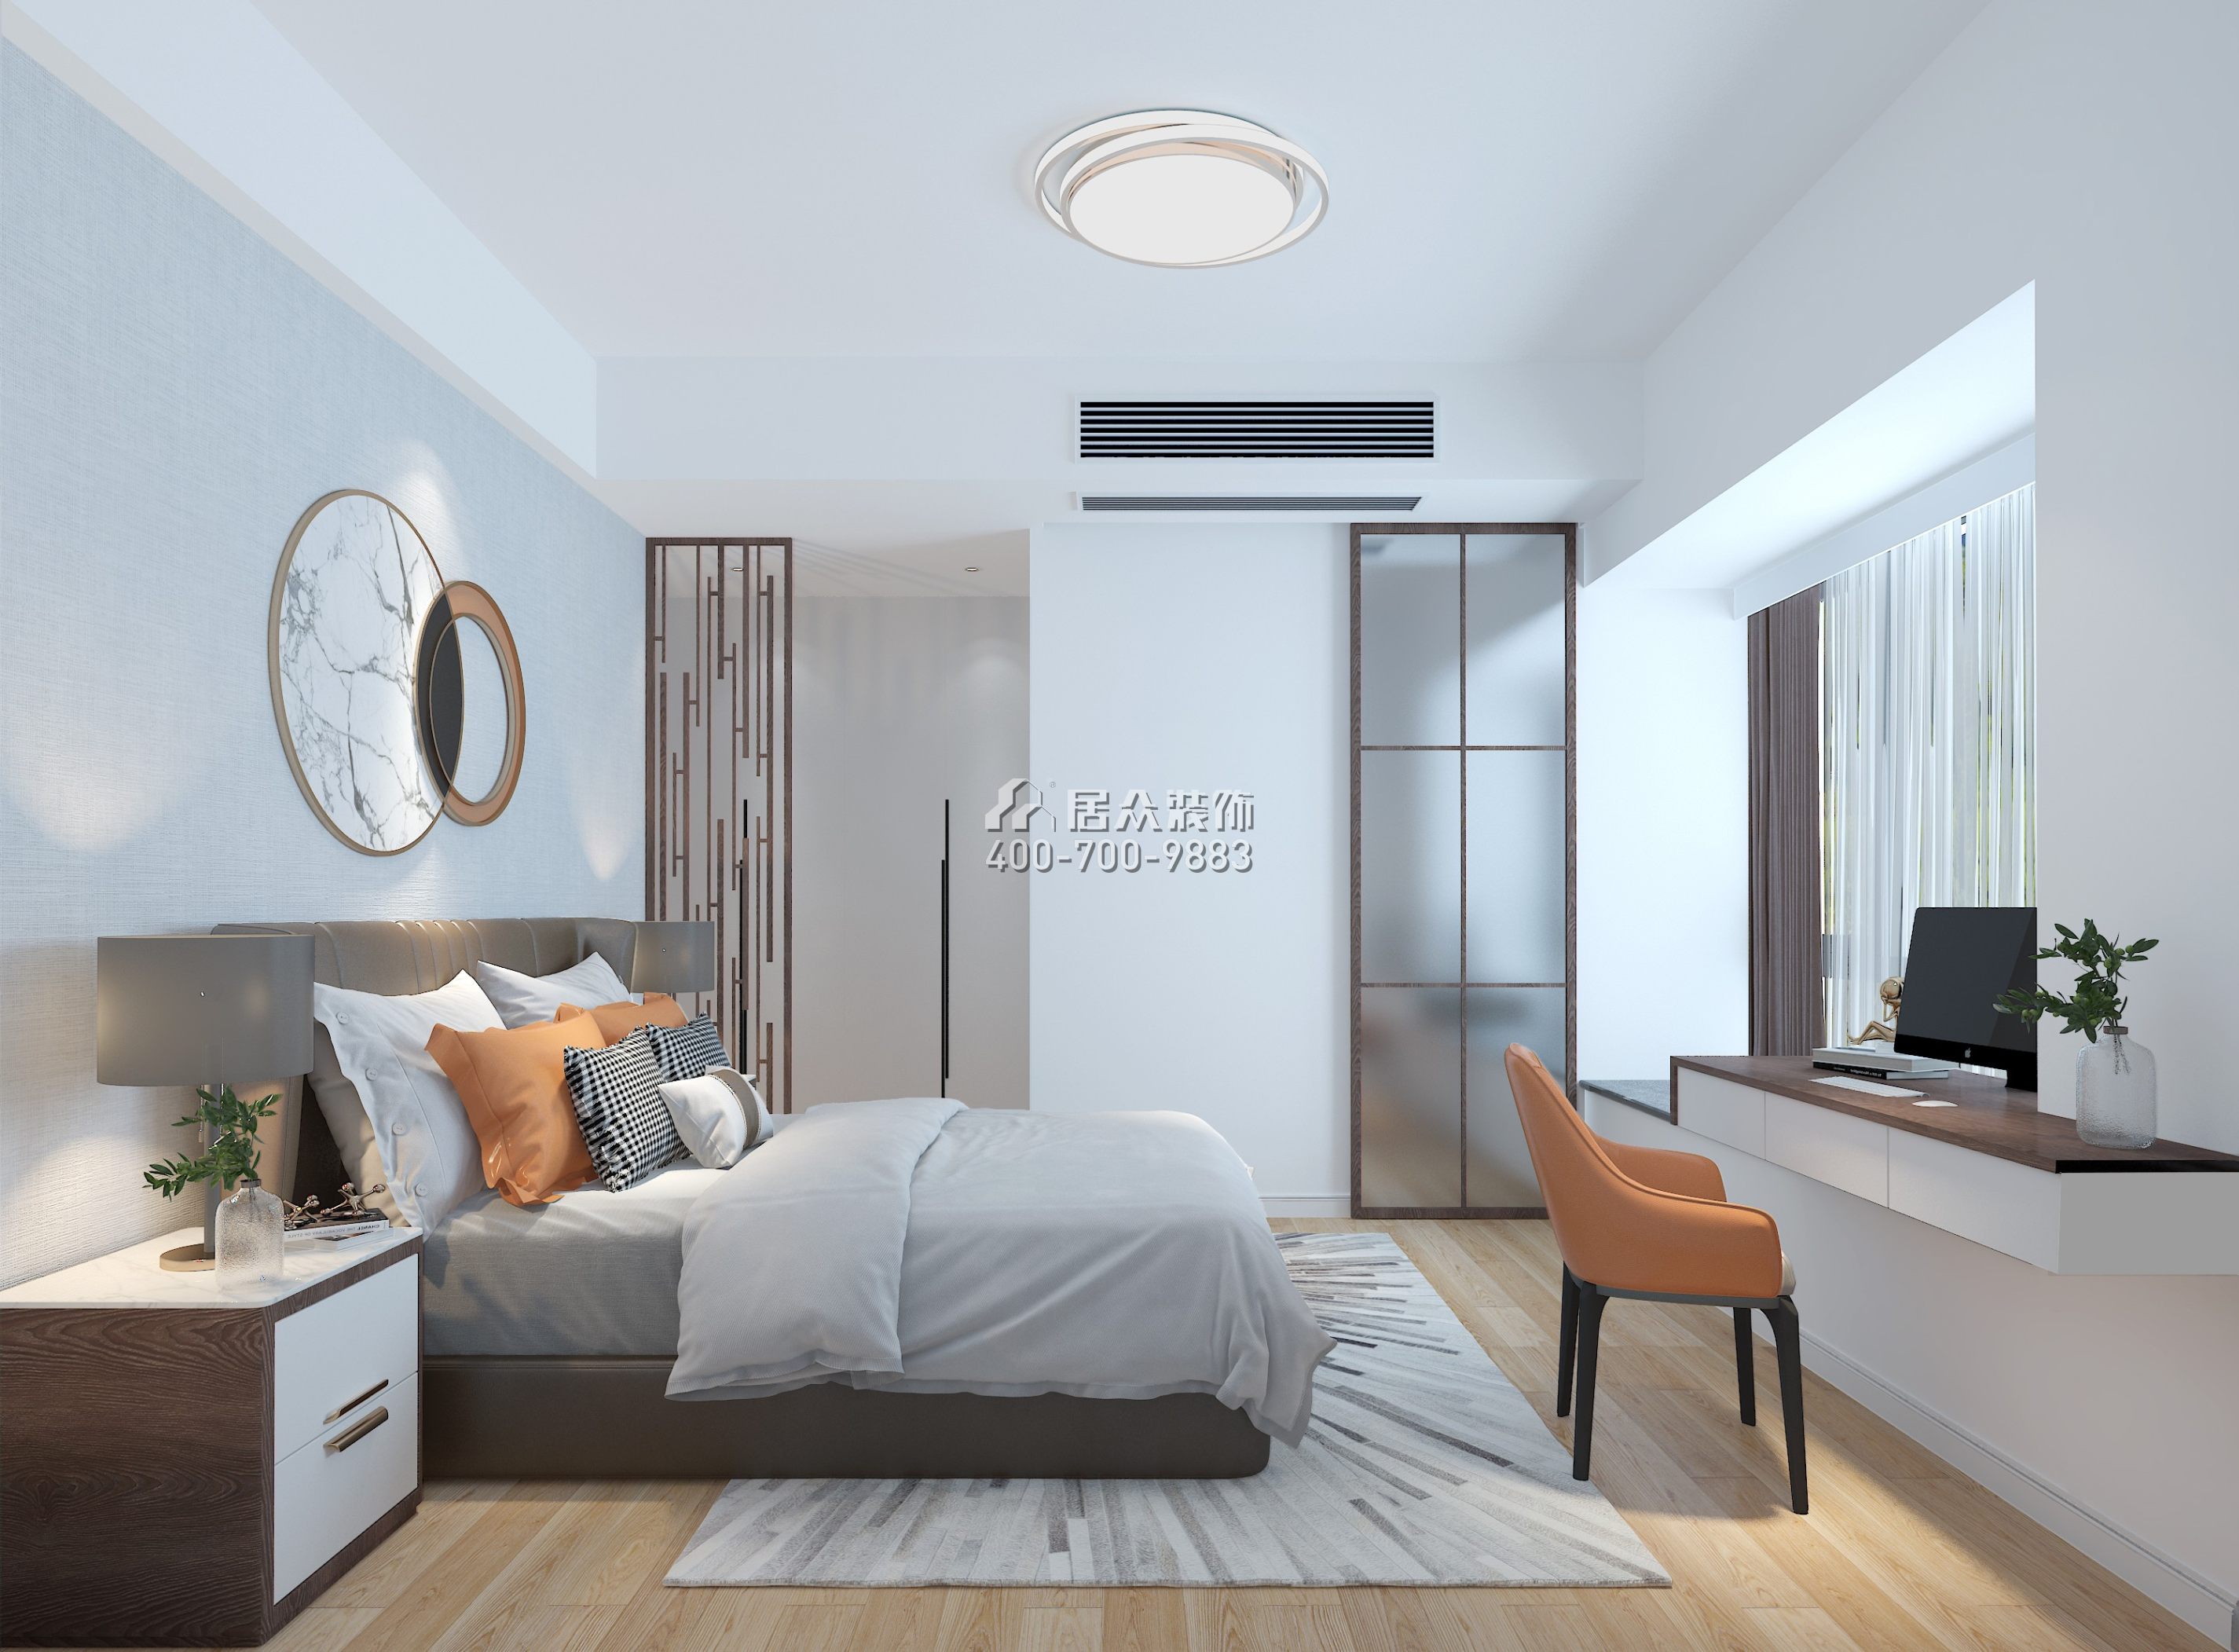 京基·御景峯121平方米现代简约风格平层户型卧室装修效果图